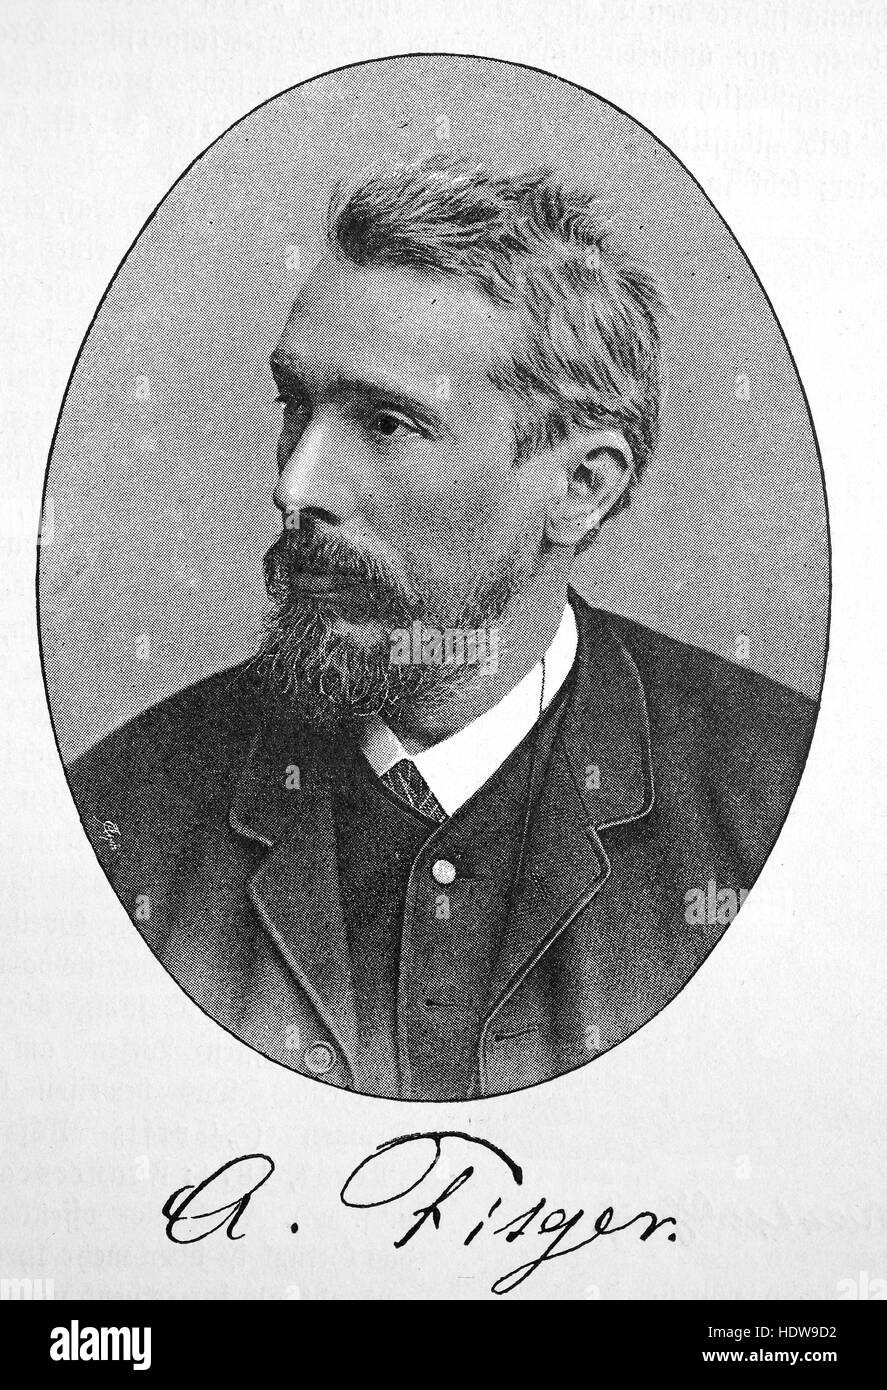 Arthur Heinrich Wilhelm Fitger, 1840 - 1909, pittore tedesco, critico d'arte, poeta e commediografo, xilografia a partire dall'anno 1880 Foto Stock